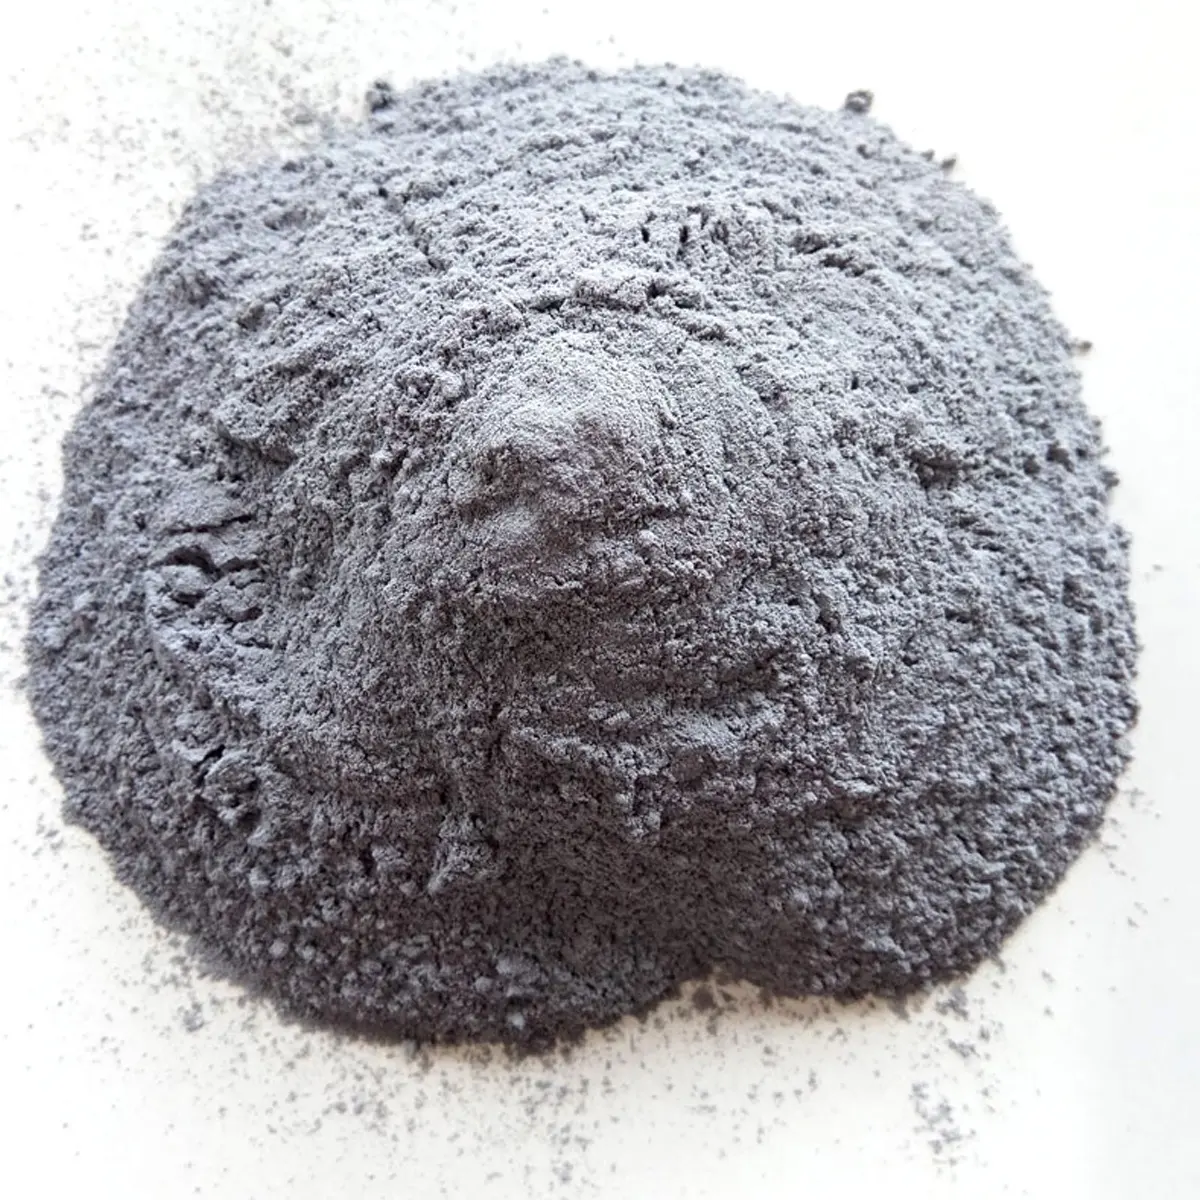 耐火物/セメント/コンクリート用二酸化シリコン/SiO2砂中国